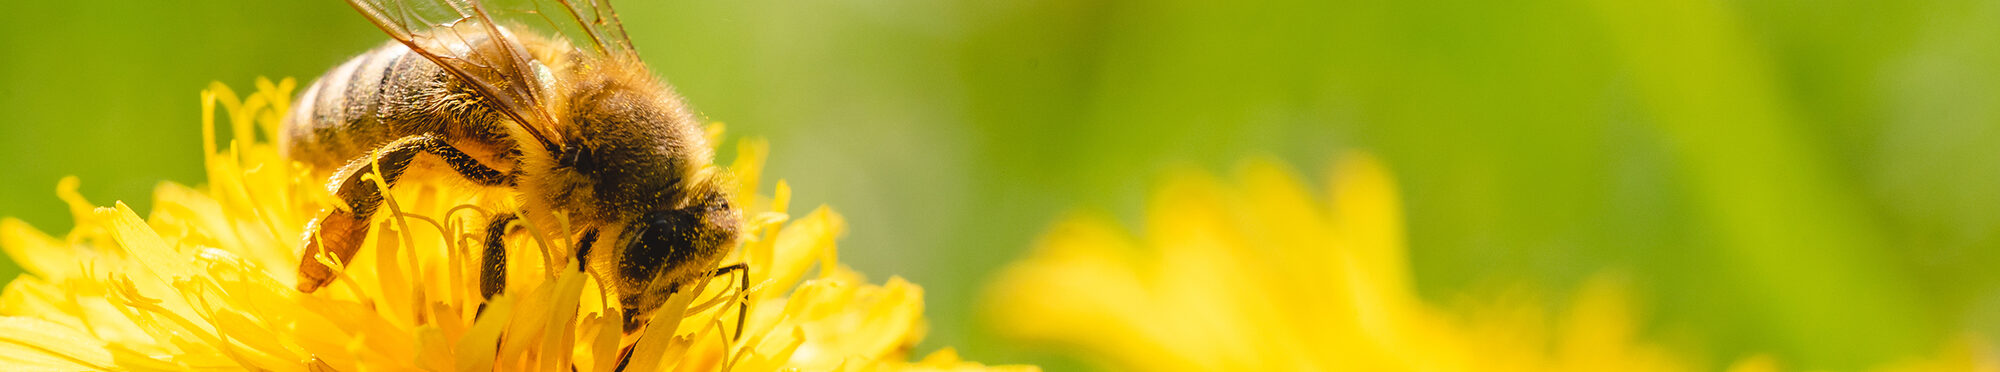 Motivbild Biene auf Blüte [Foto: ©Przemyslaw Iciak - stock.adobe.com]